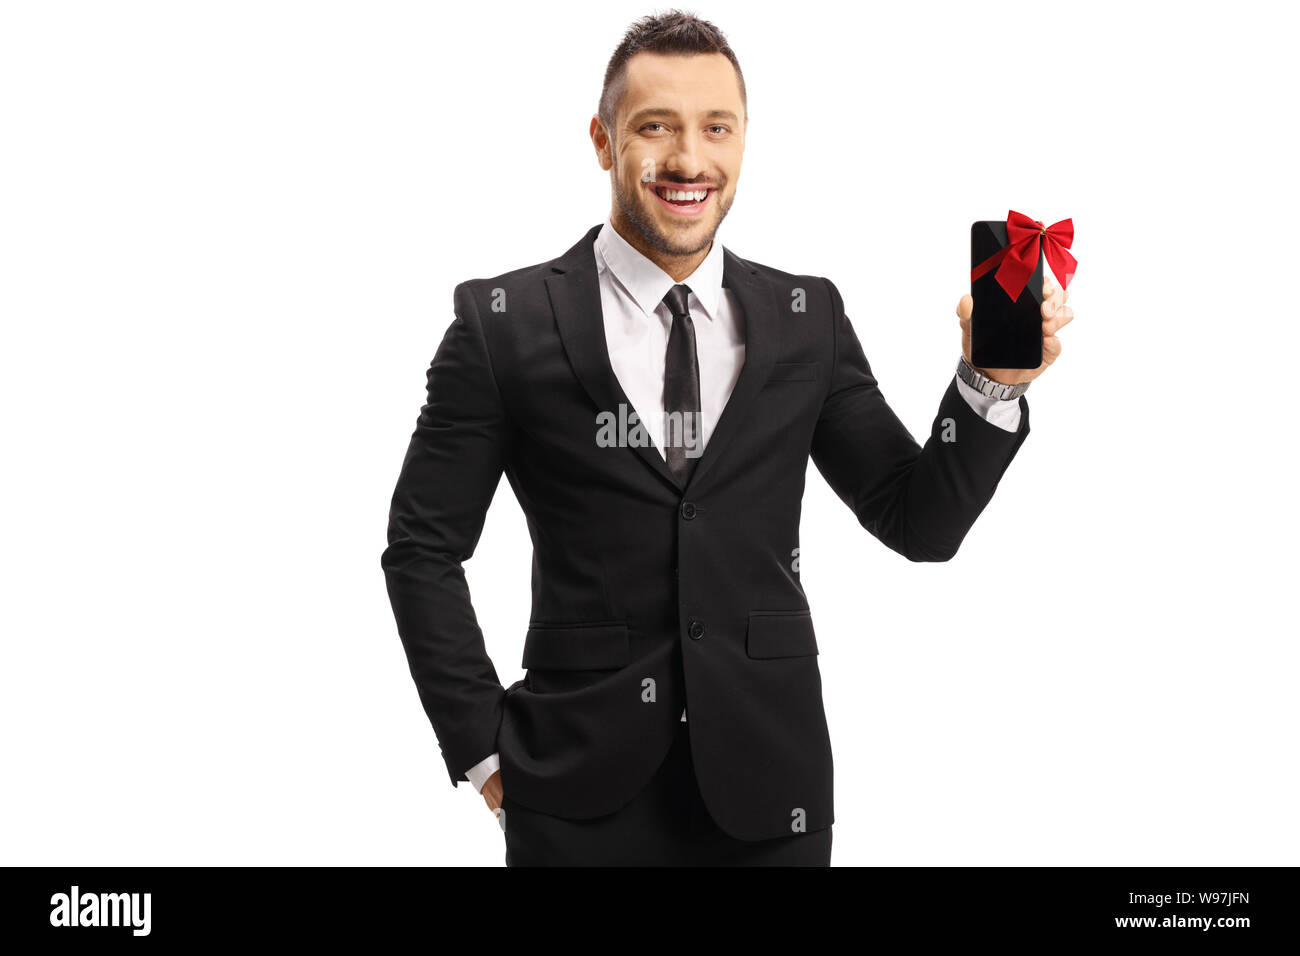 Cheerful man in a suit holding a mobile phone présent isolé sur fond blanc Banque D'Images